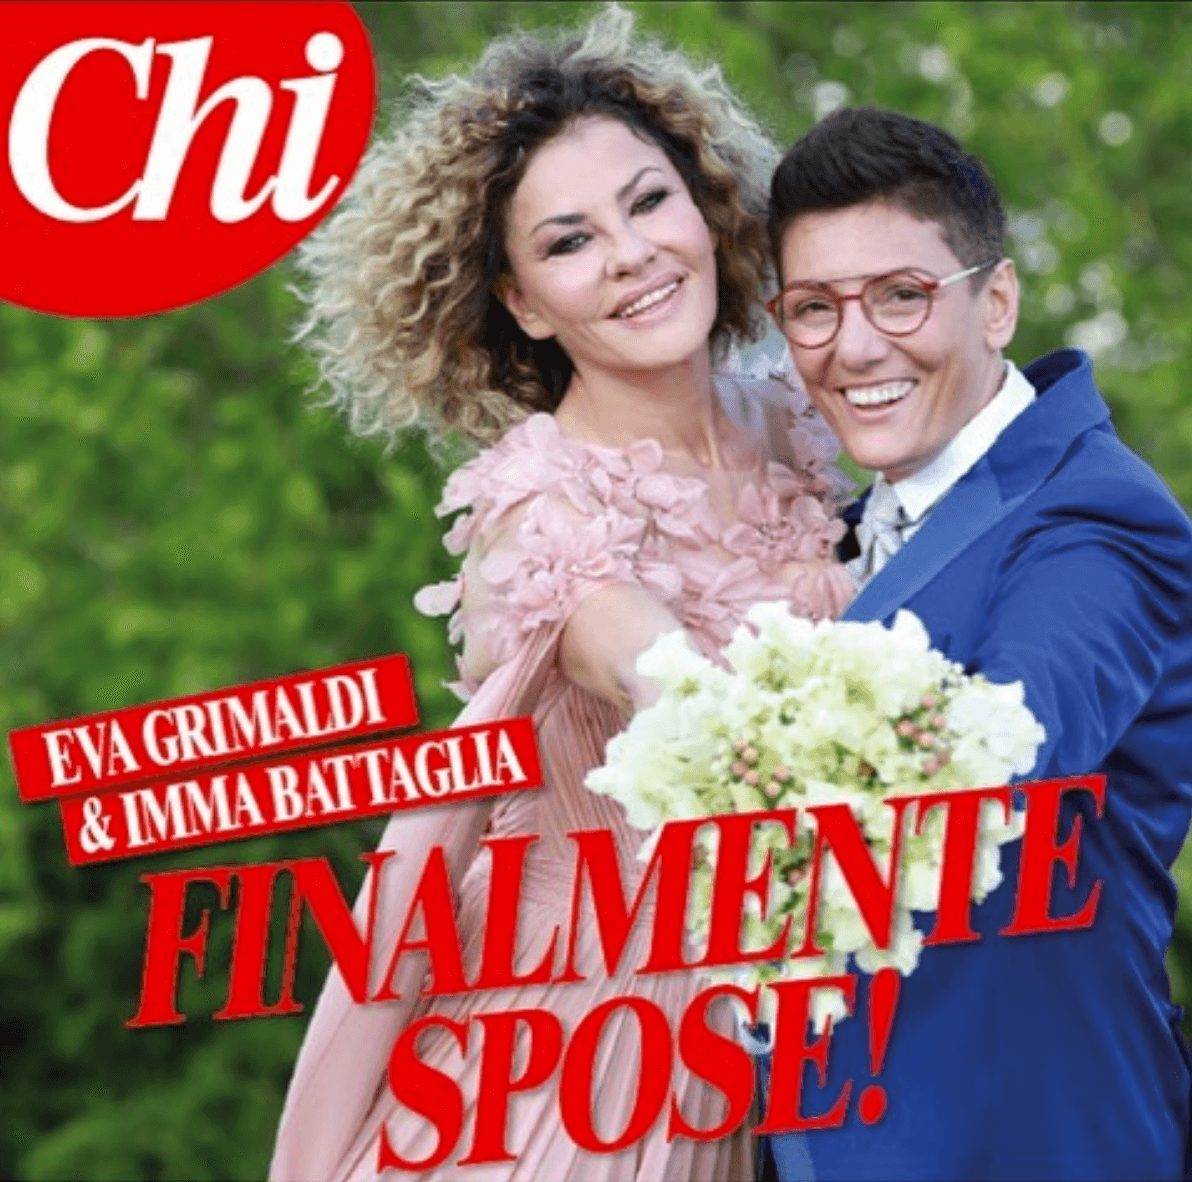 Eva Grimaldi e Imma Battaglia si sono unite civilmente - Eva Grimaldi e Imma Battaglia - Gay.it